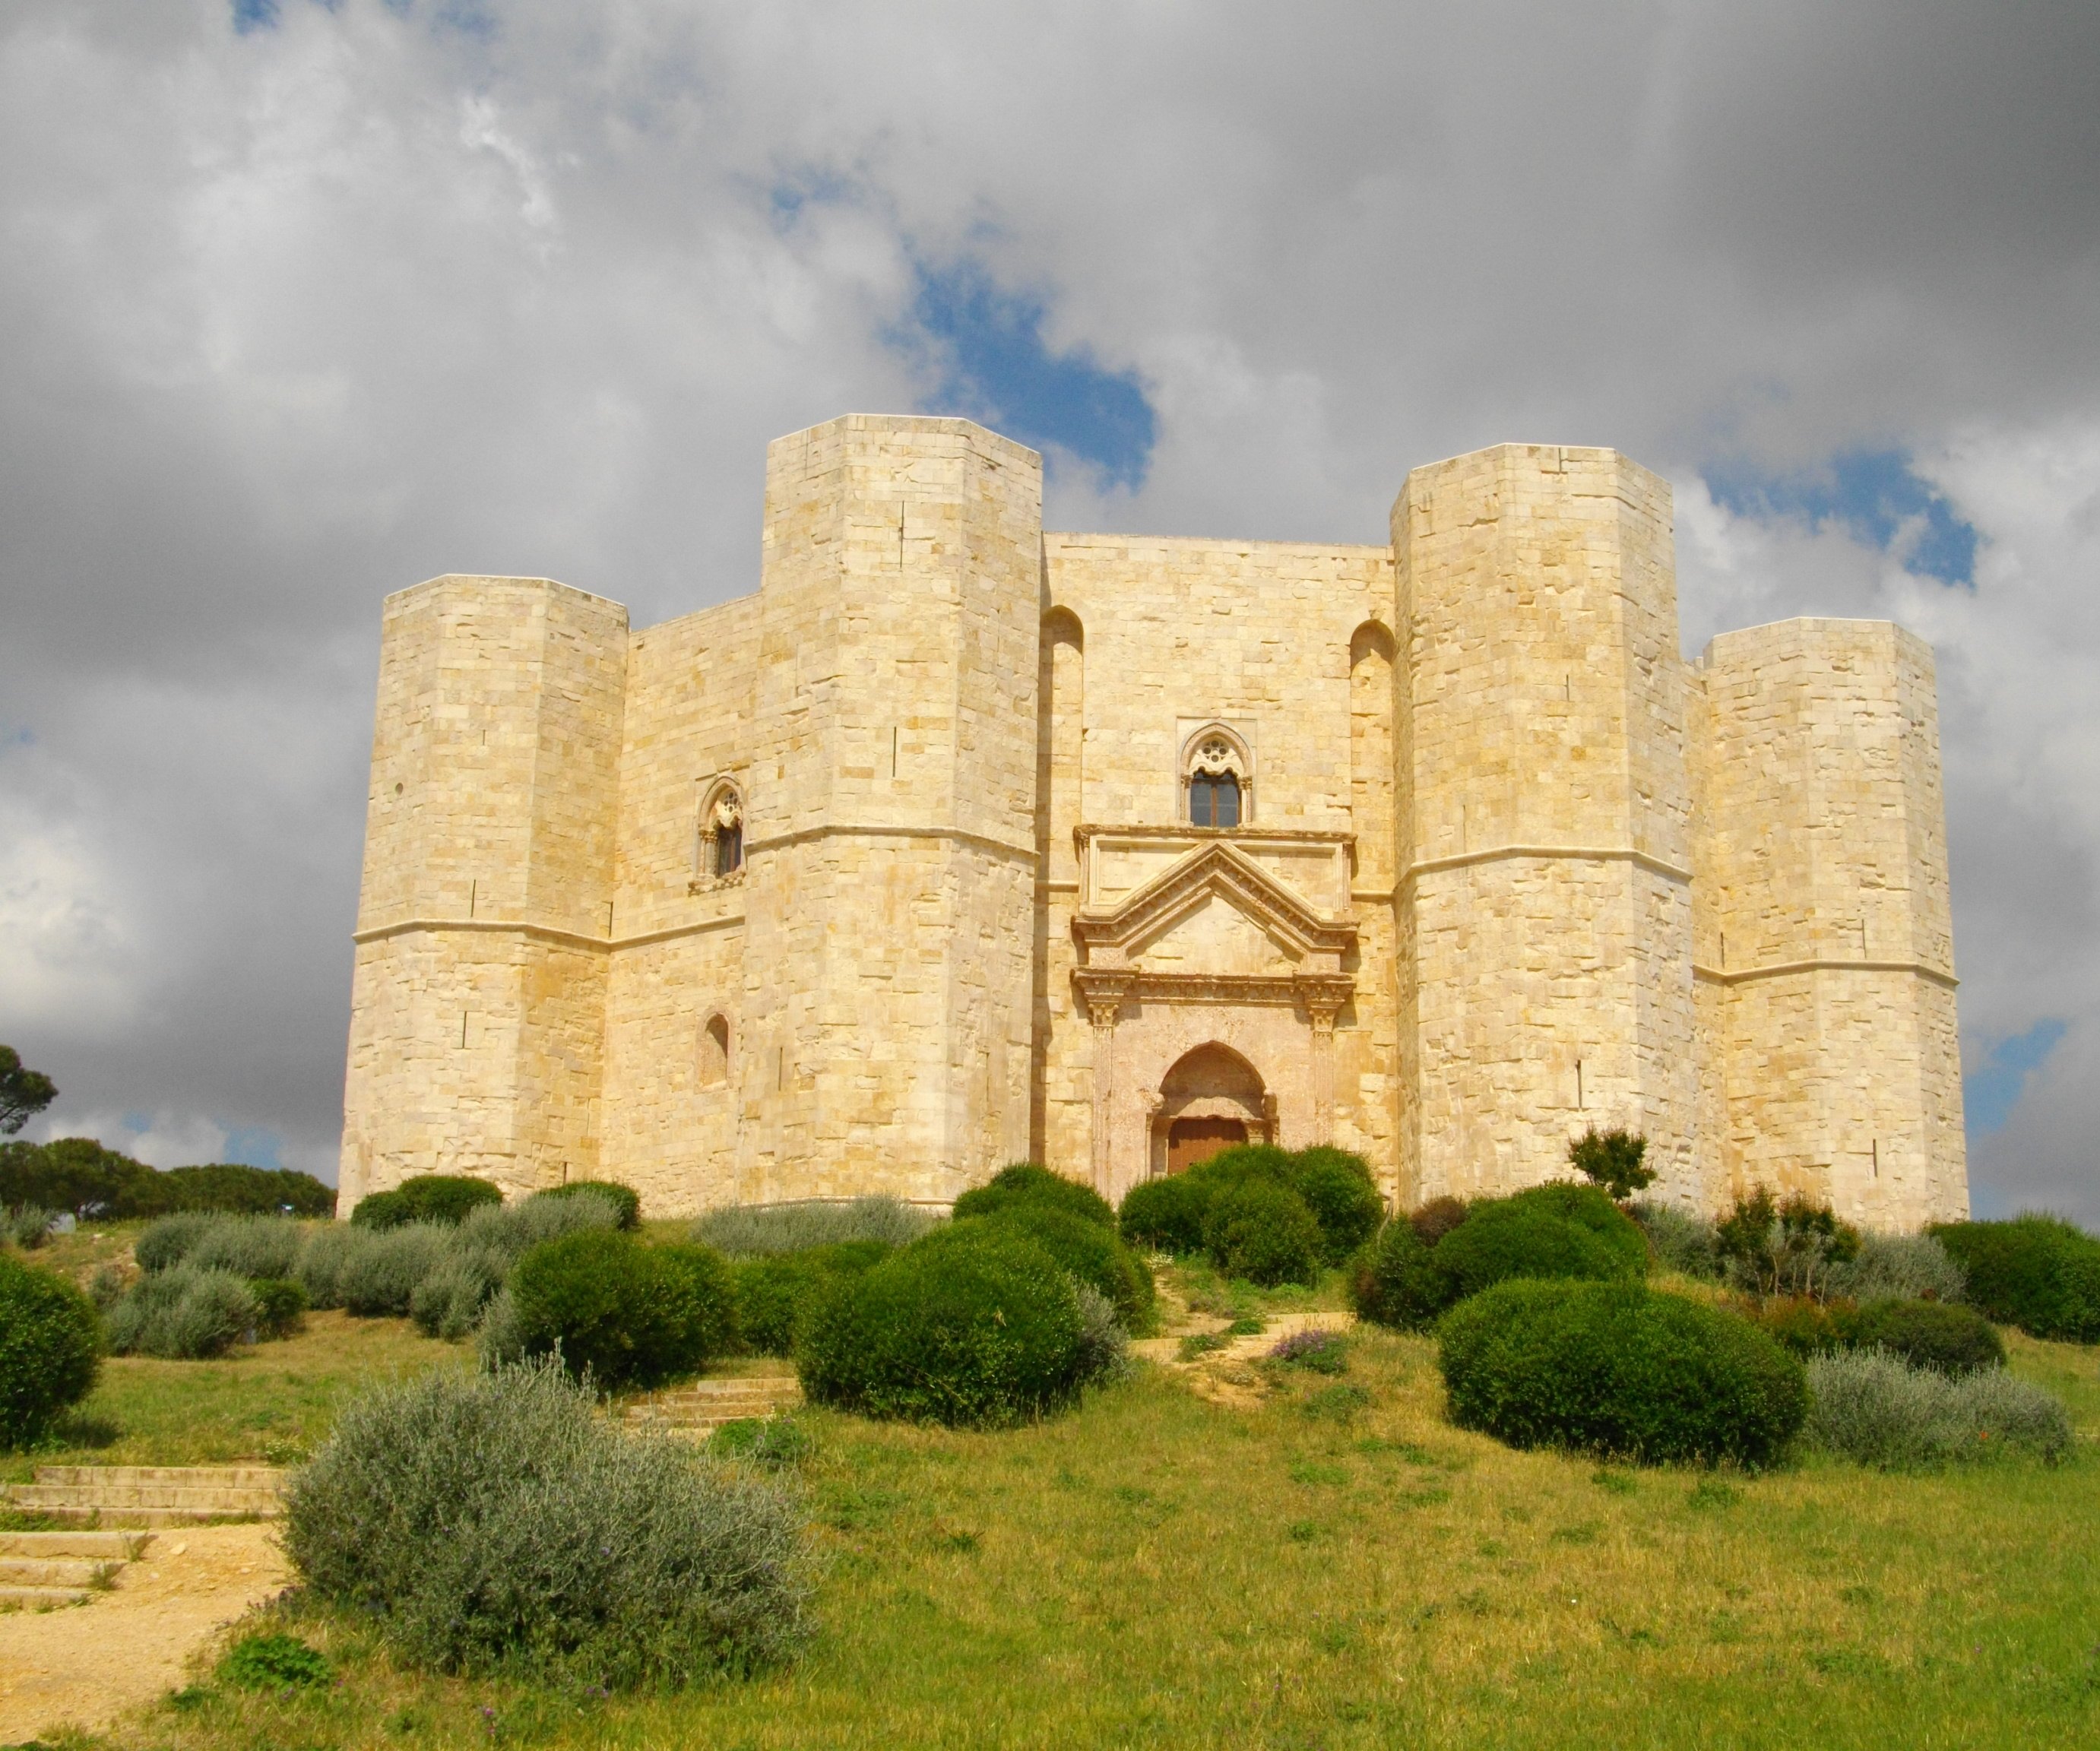 Außergewöhnlicher Bau: Das Castel del Monte